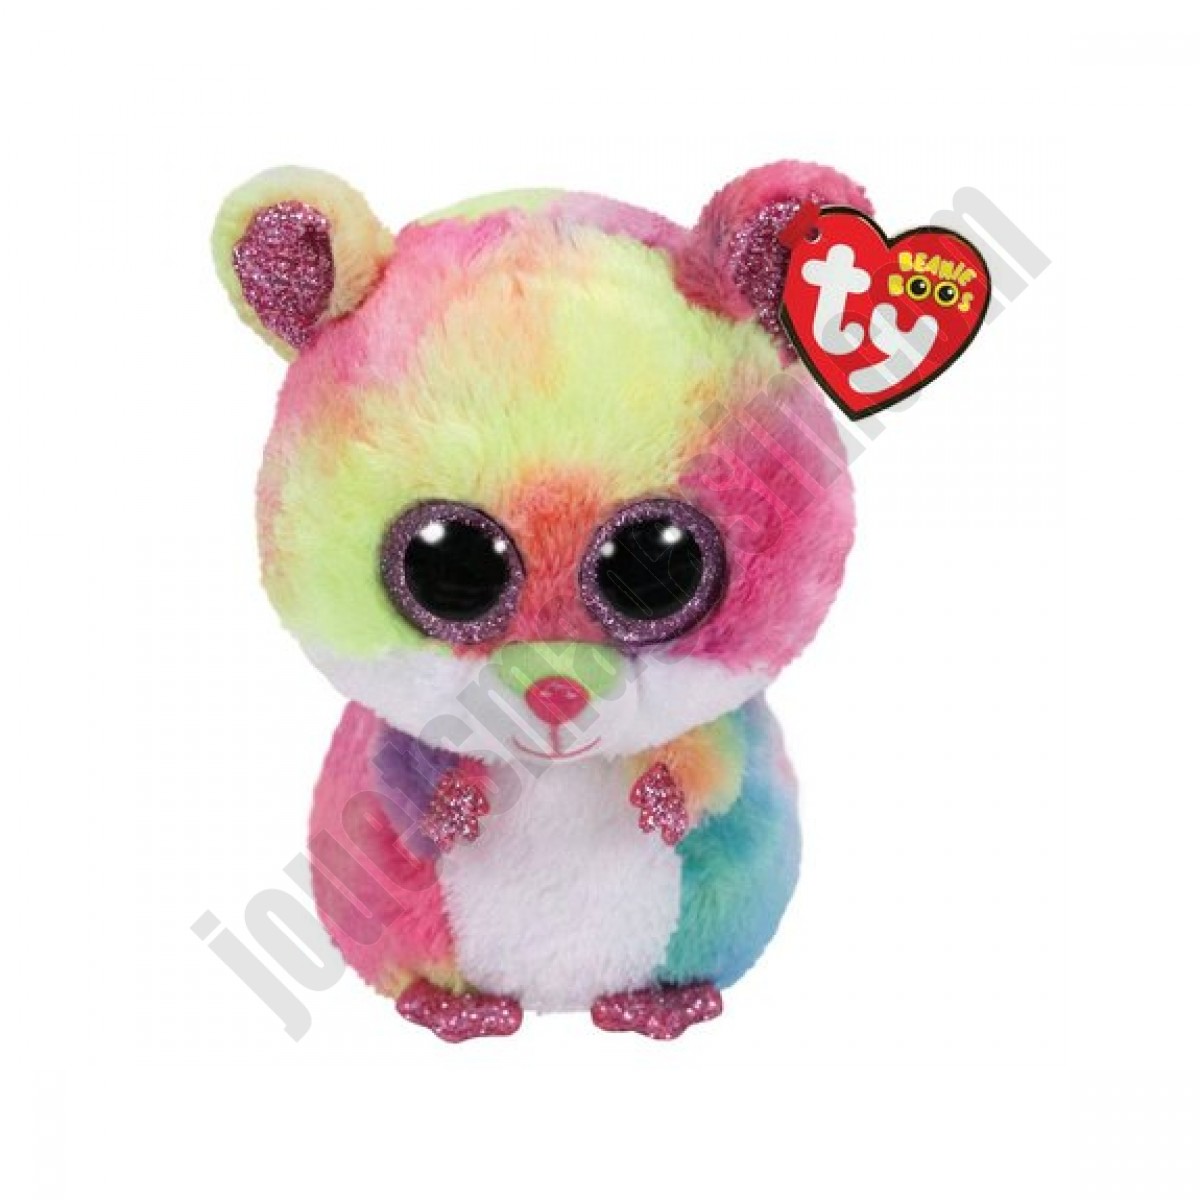 Beanie Boo's - Rodney le hamster multicolore 15 cm ◆◆◆ Nouveau - Beanie Boo's - Rodney le hamster multicolore 15 cm ◆◆◆ Nouveau